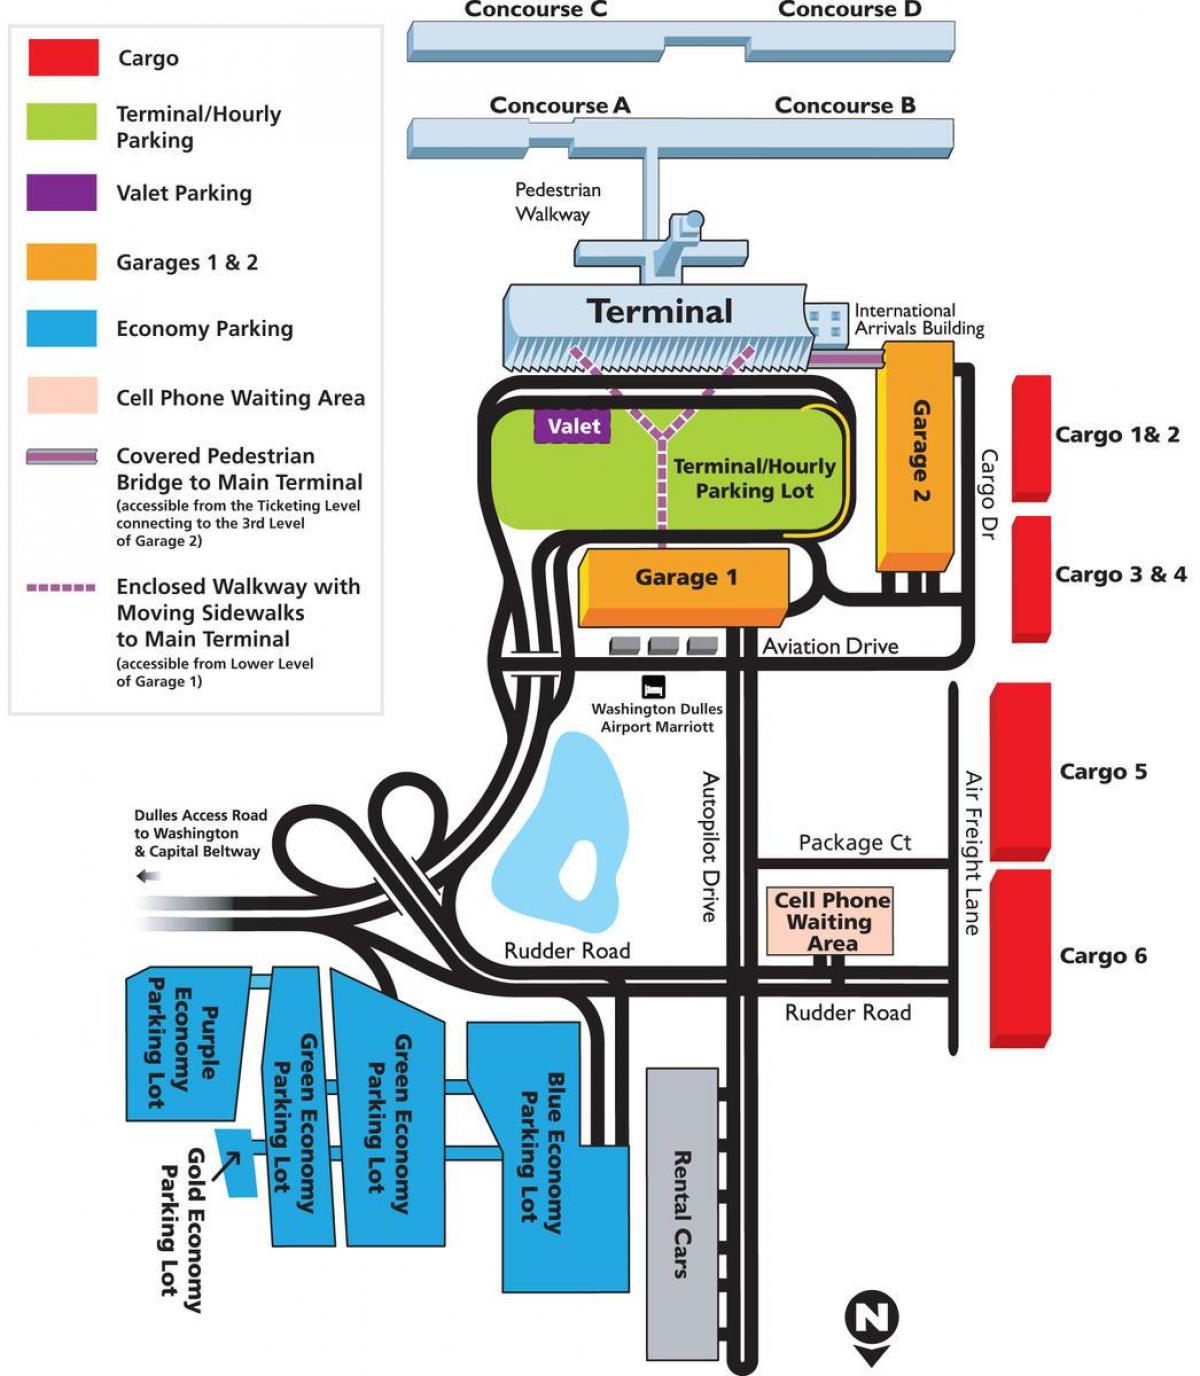 térkép dulles airport területén